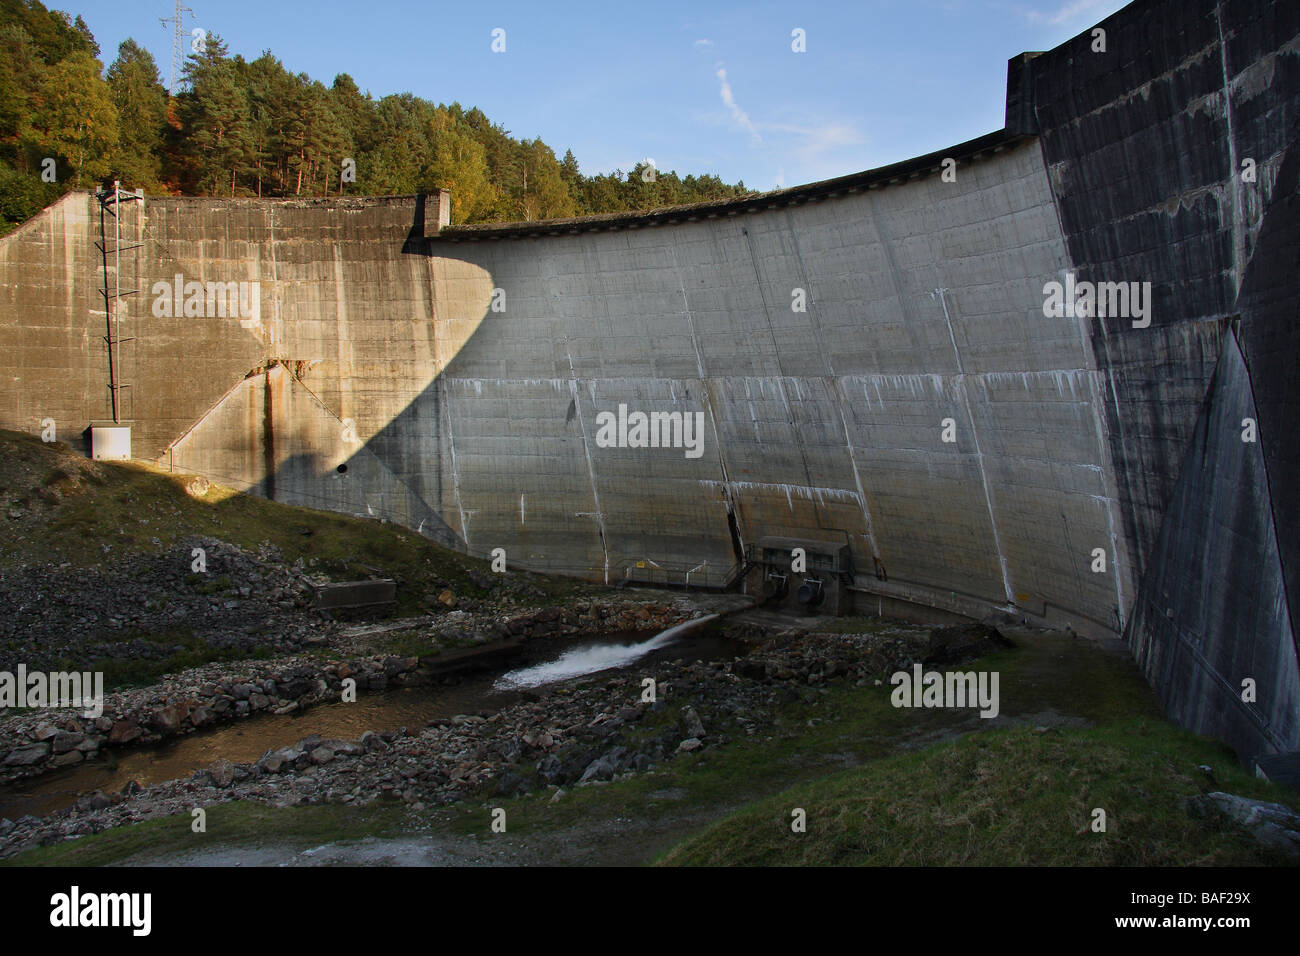 Vue d'un barrage hydroélectrique dans la région de France Bleu du ciel au-delà Banque D'Images